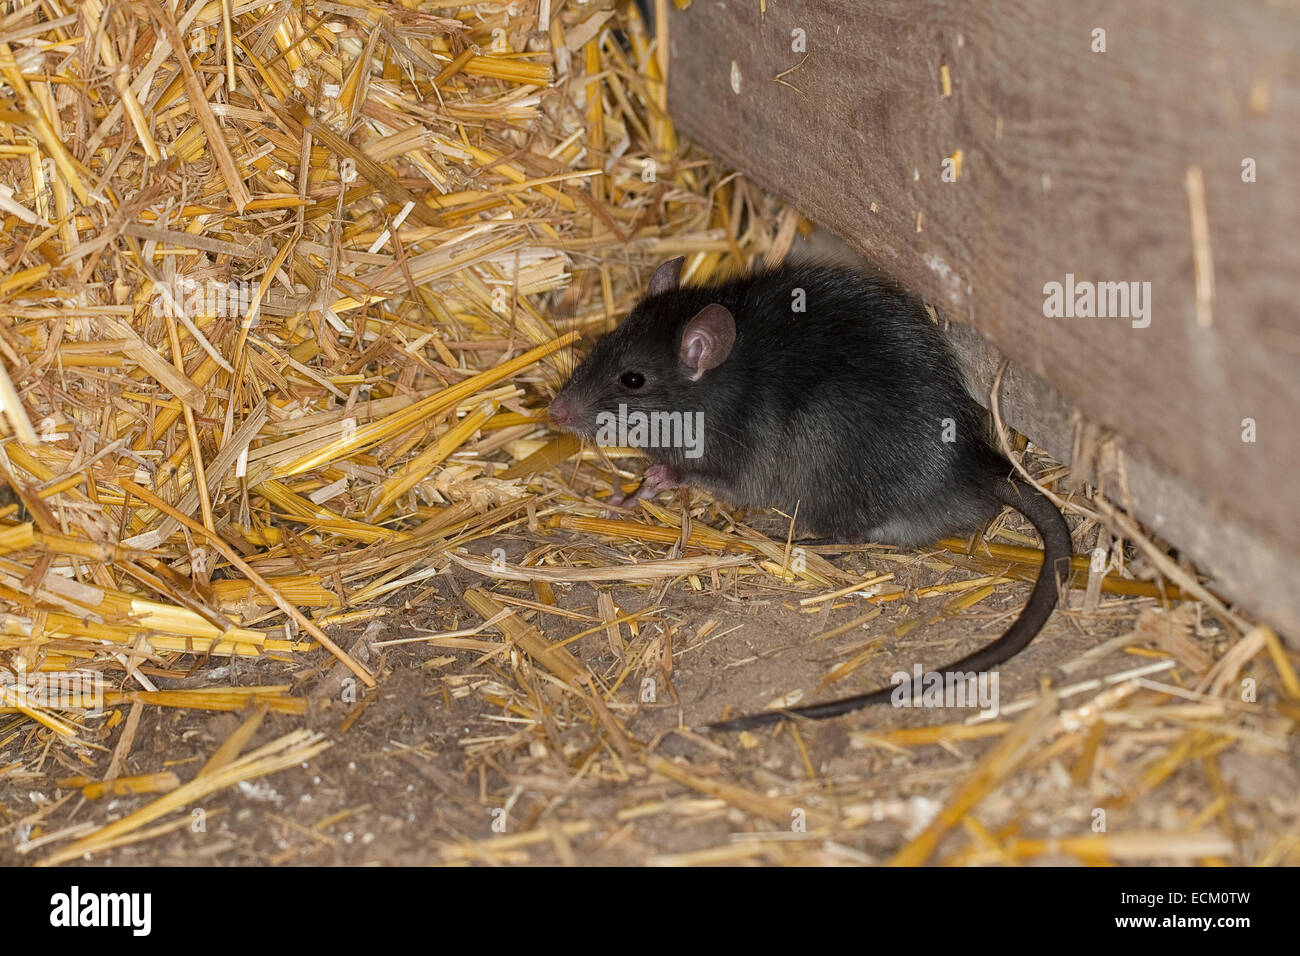 Rat noir, rat noir, rat, rat bateau maison, rats, Hausratte Haus-Ratte, Ratte, Ratten,, Rattus rattus, le rat noir, rat des greniers Banque D'Images